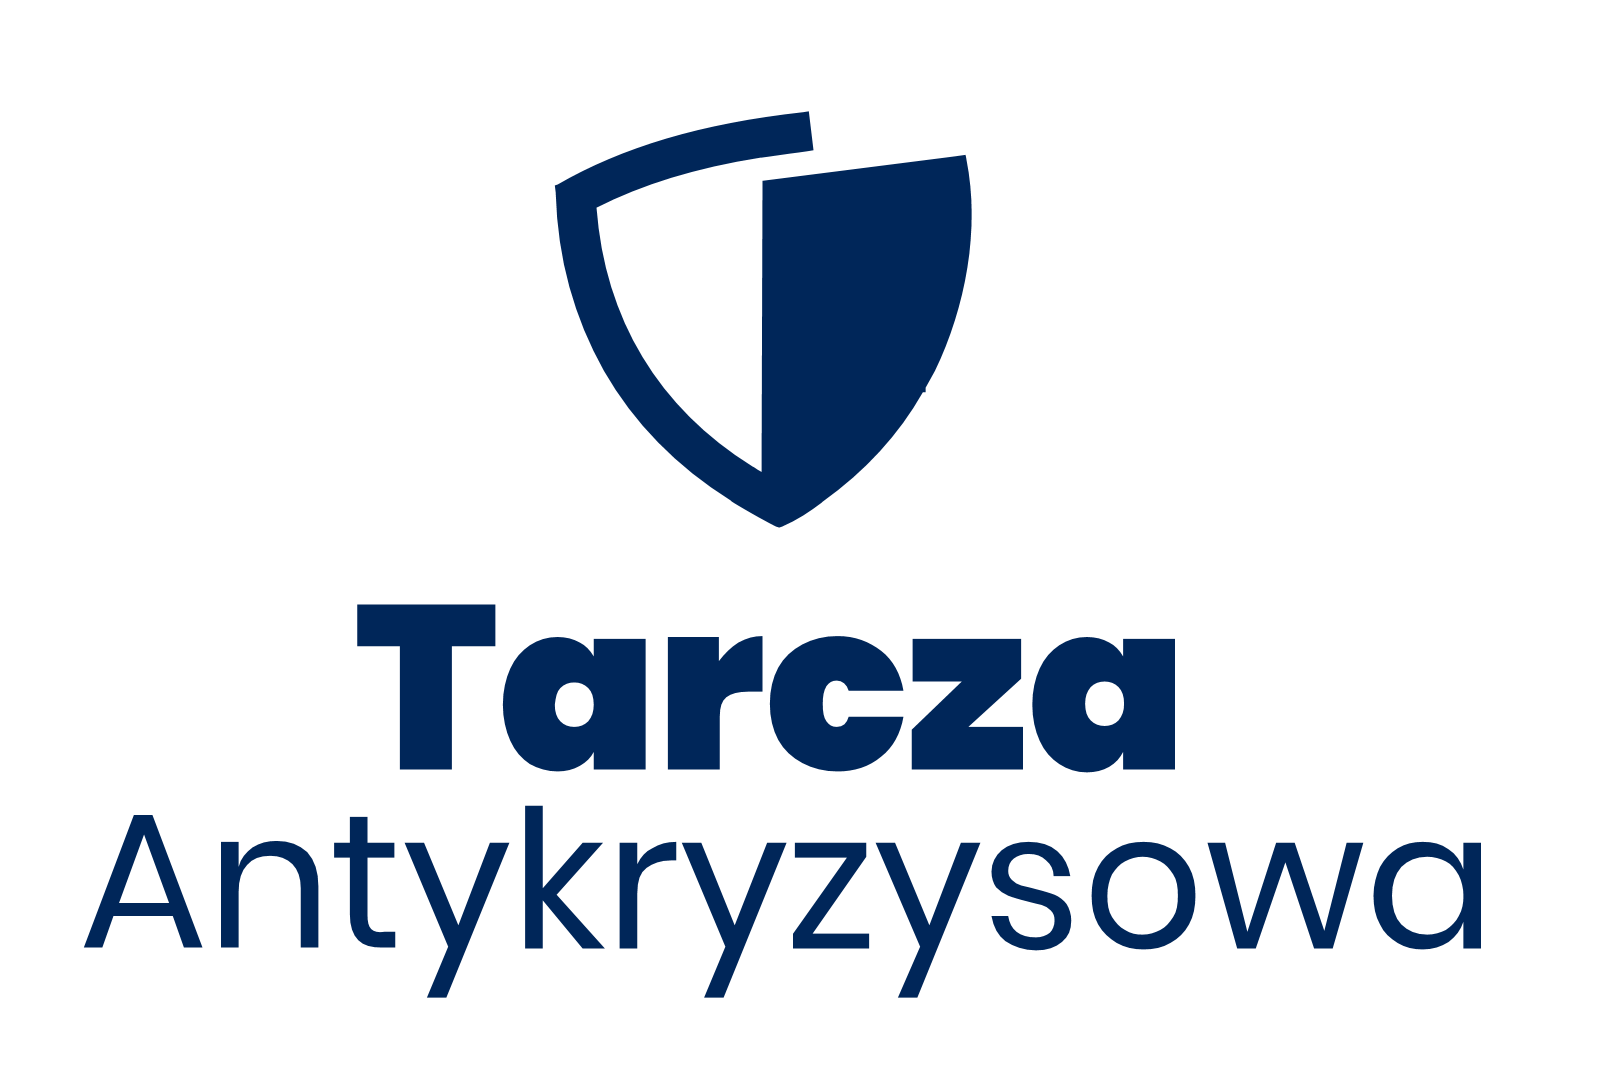 Logo - Tarcza Antykryzysowa